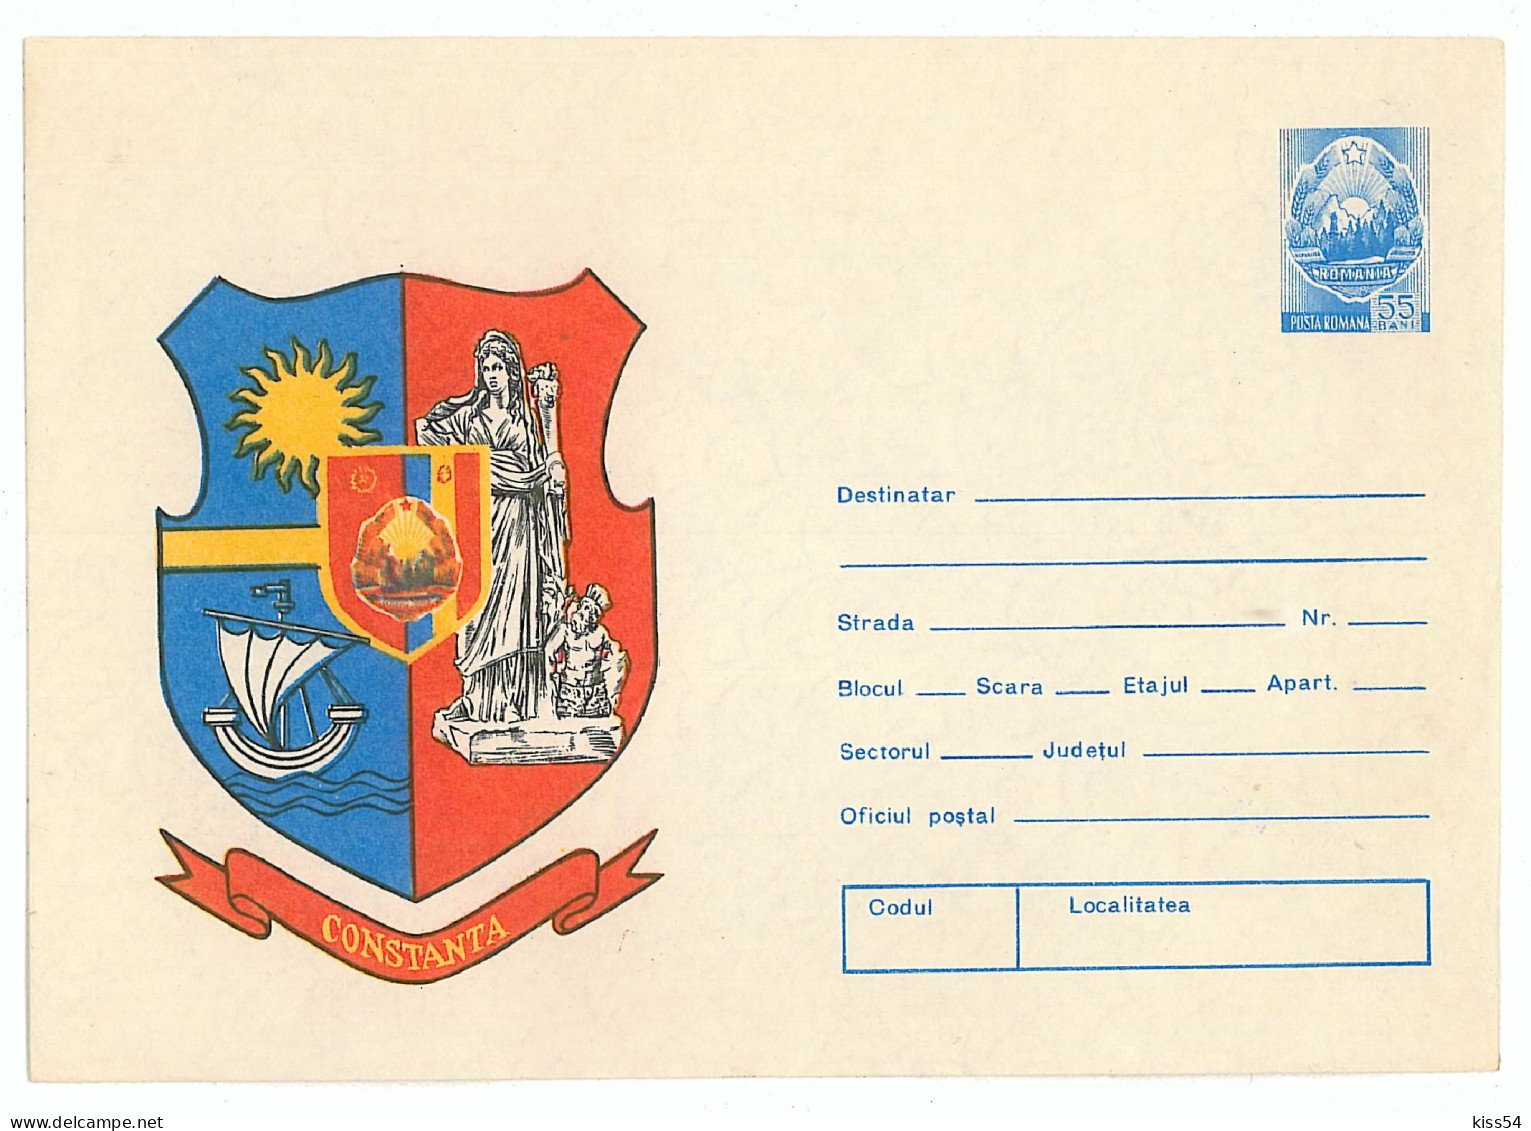 IP 76 - 154 BOAT, Heraldry CONSTANTA - Stationery - Unused - 1976 - Enteros Postales